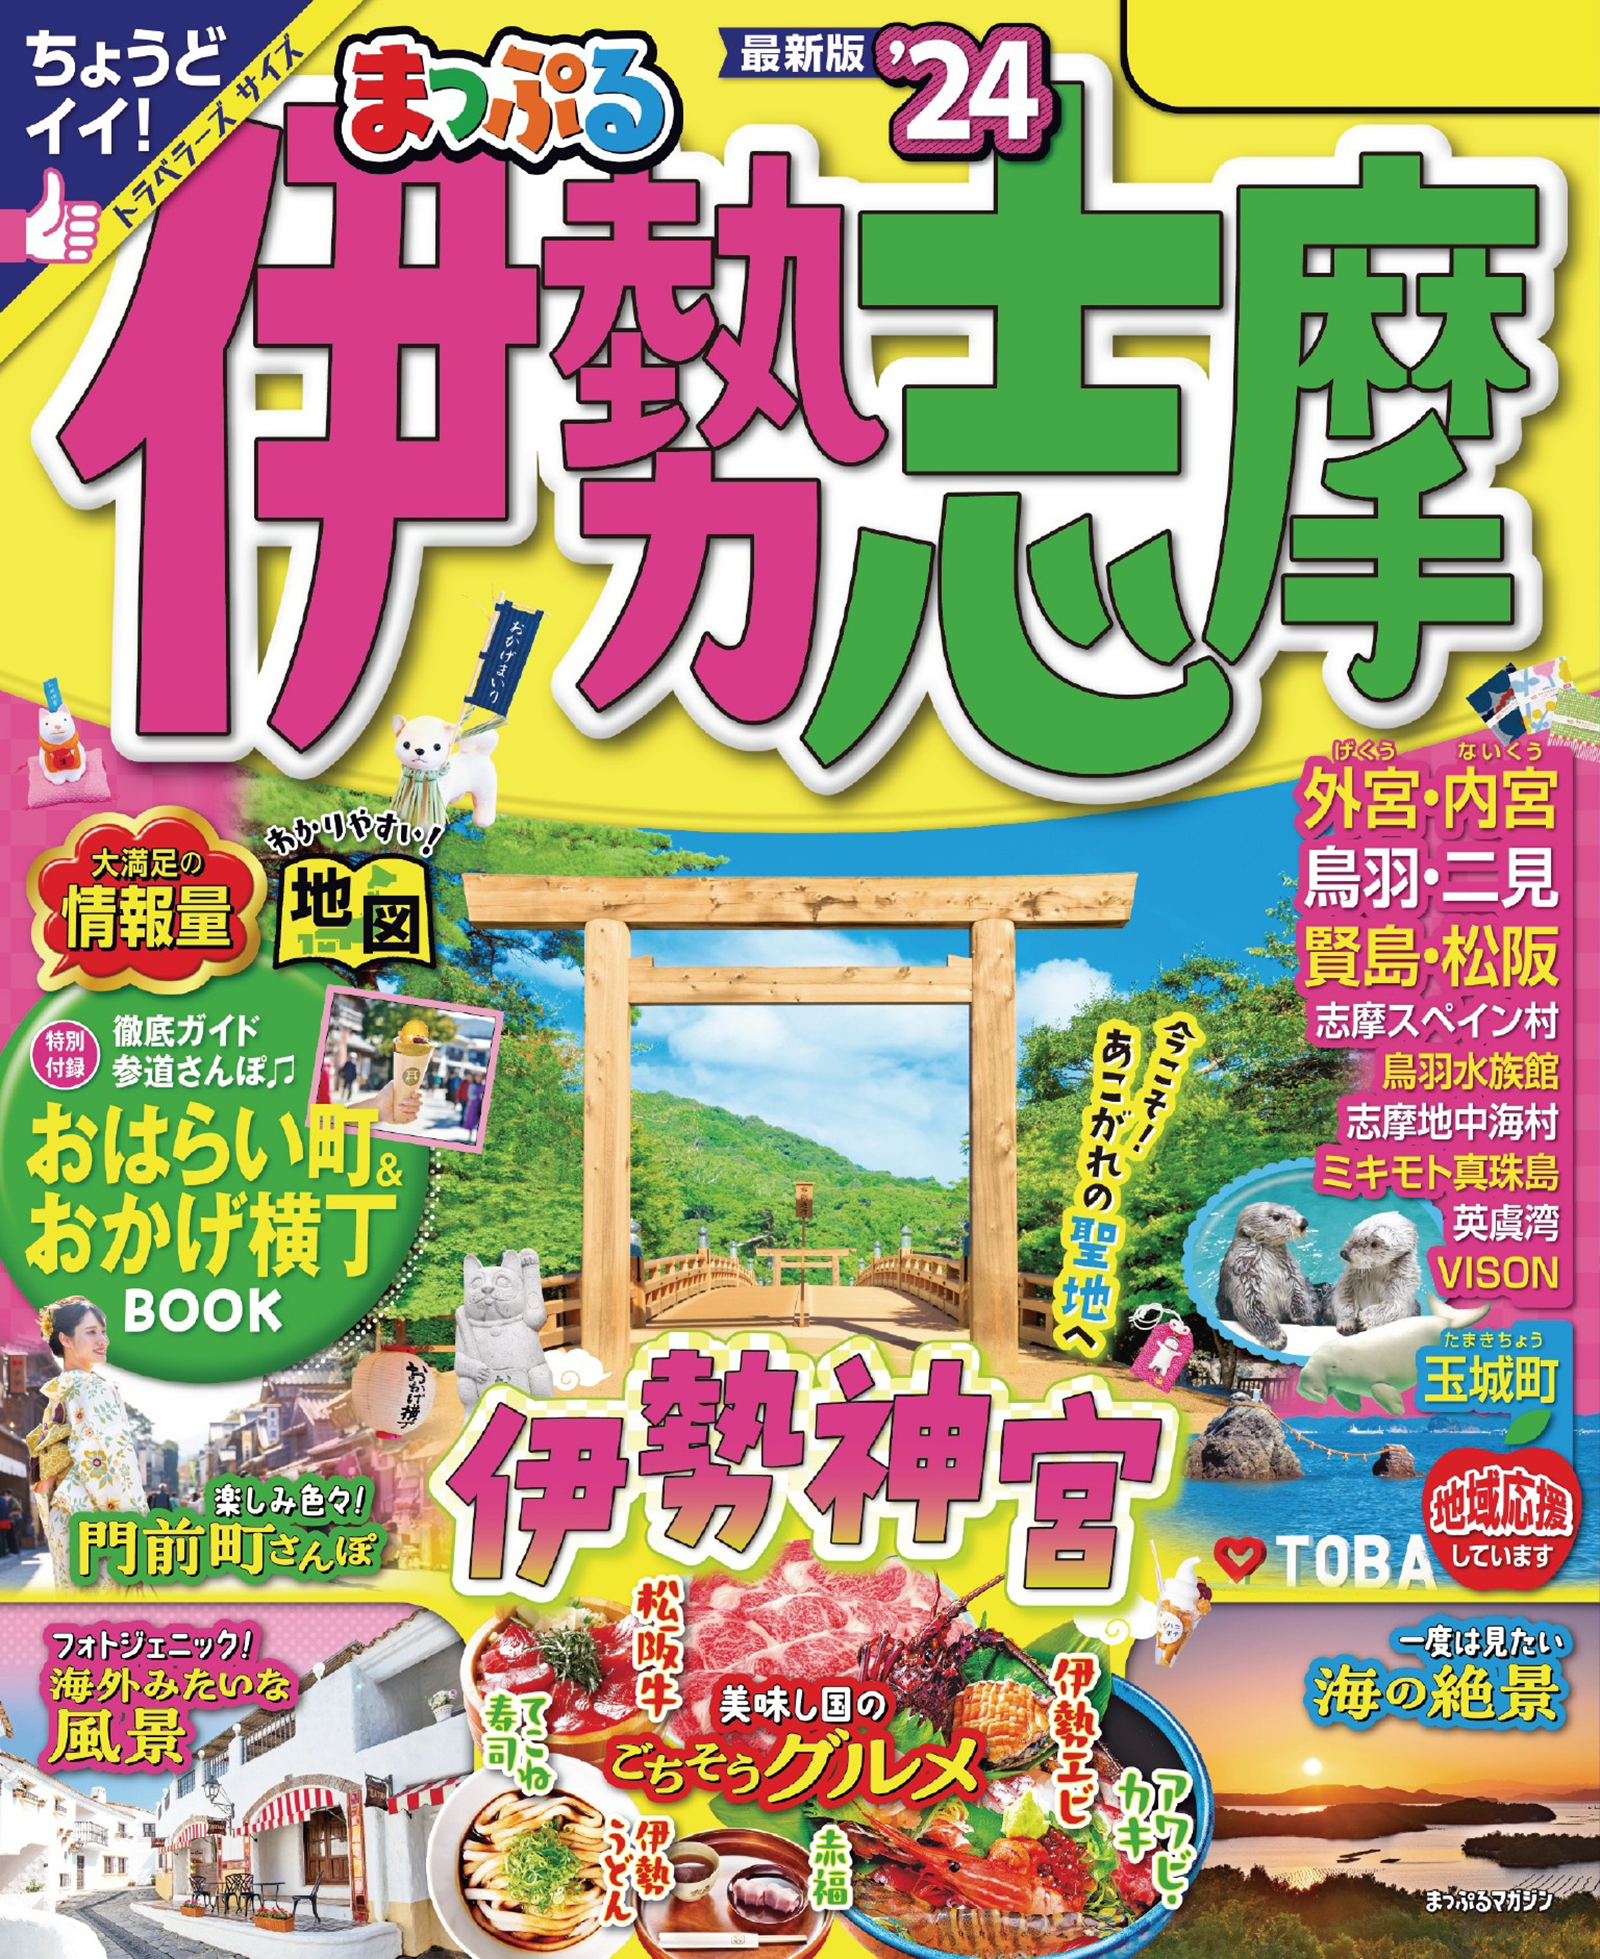 まっぷる'25 最新版 伊勢志摩 トラベラーズサイズ - 地図・旅行ガイド